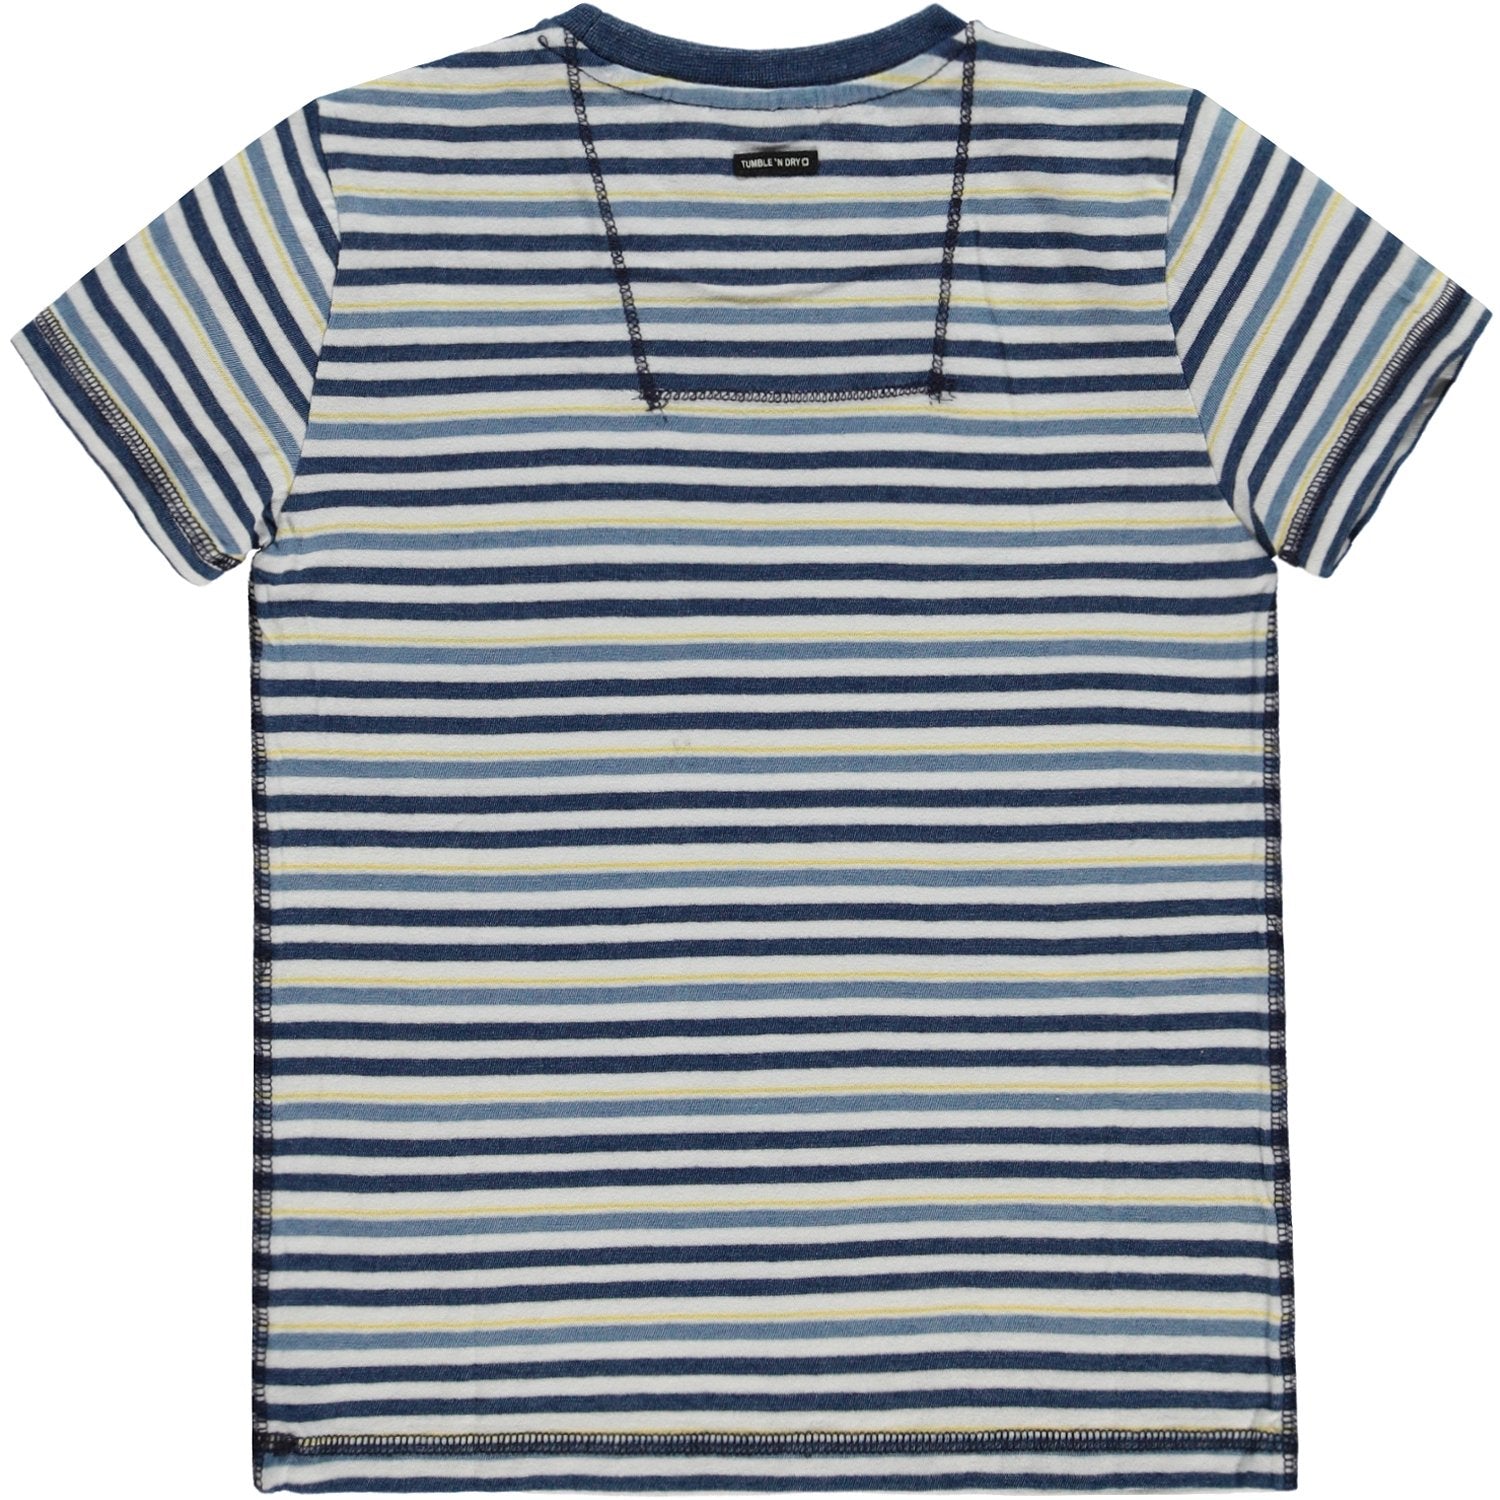 Jongens T-shirt Km O-hals van Tumble 'n Dry in de kleur Denim in maat 128.